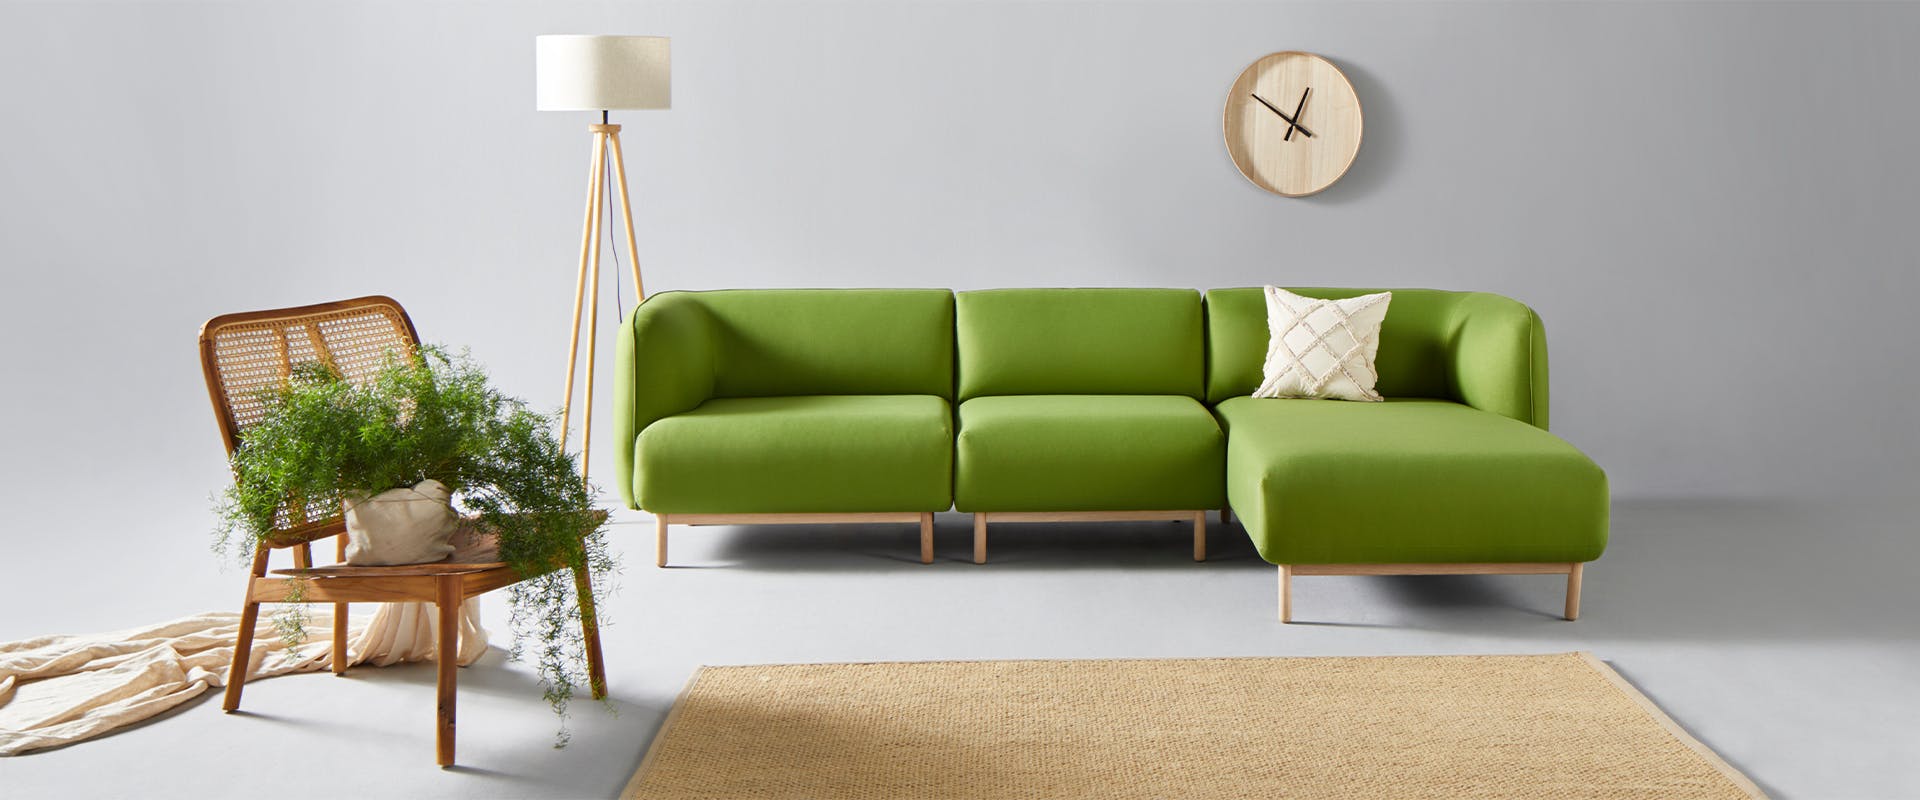 Ein grünes Sofa in einem Wohnzimmer.